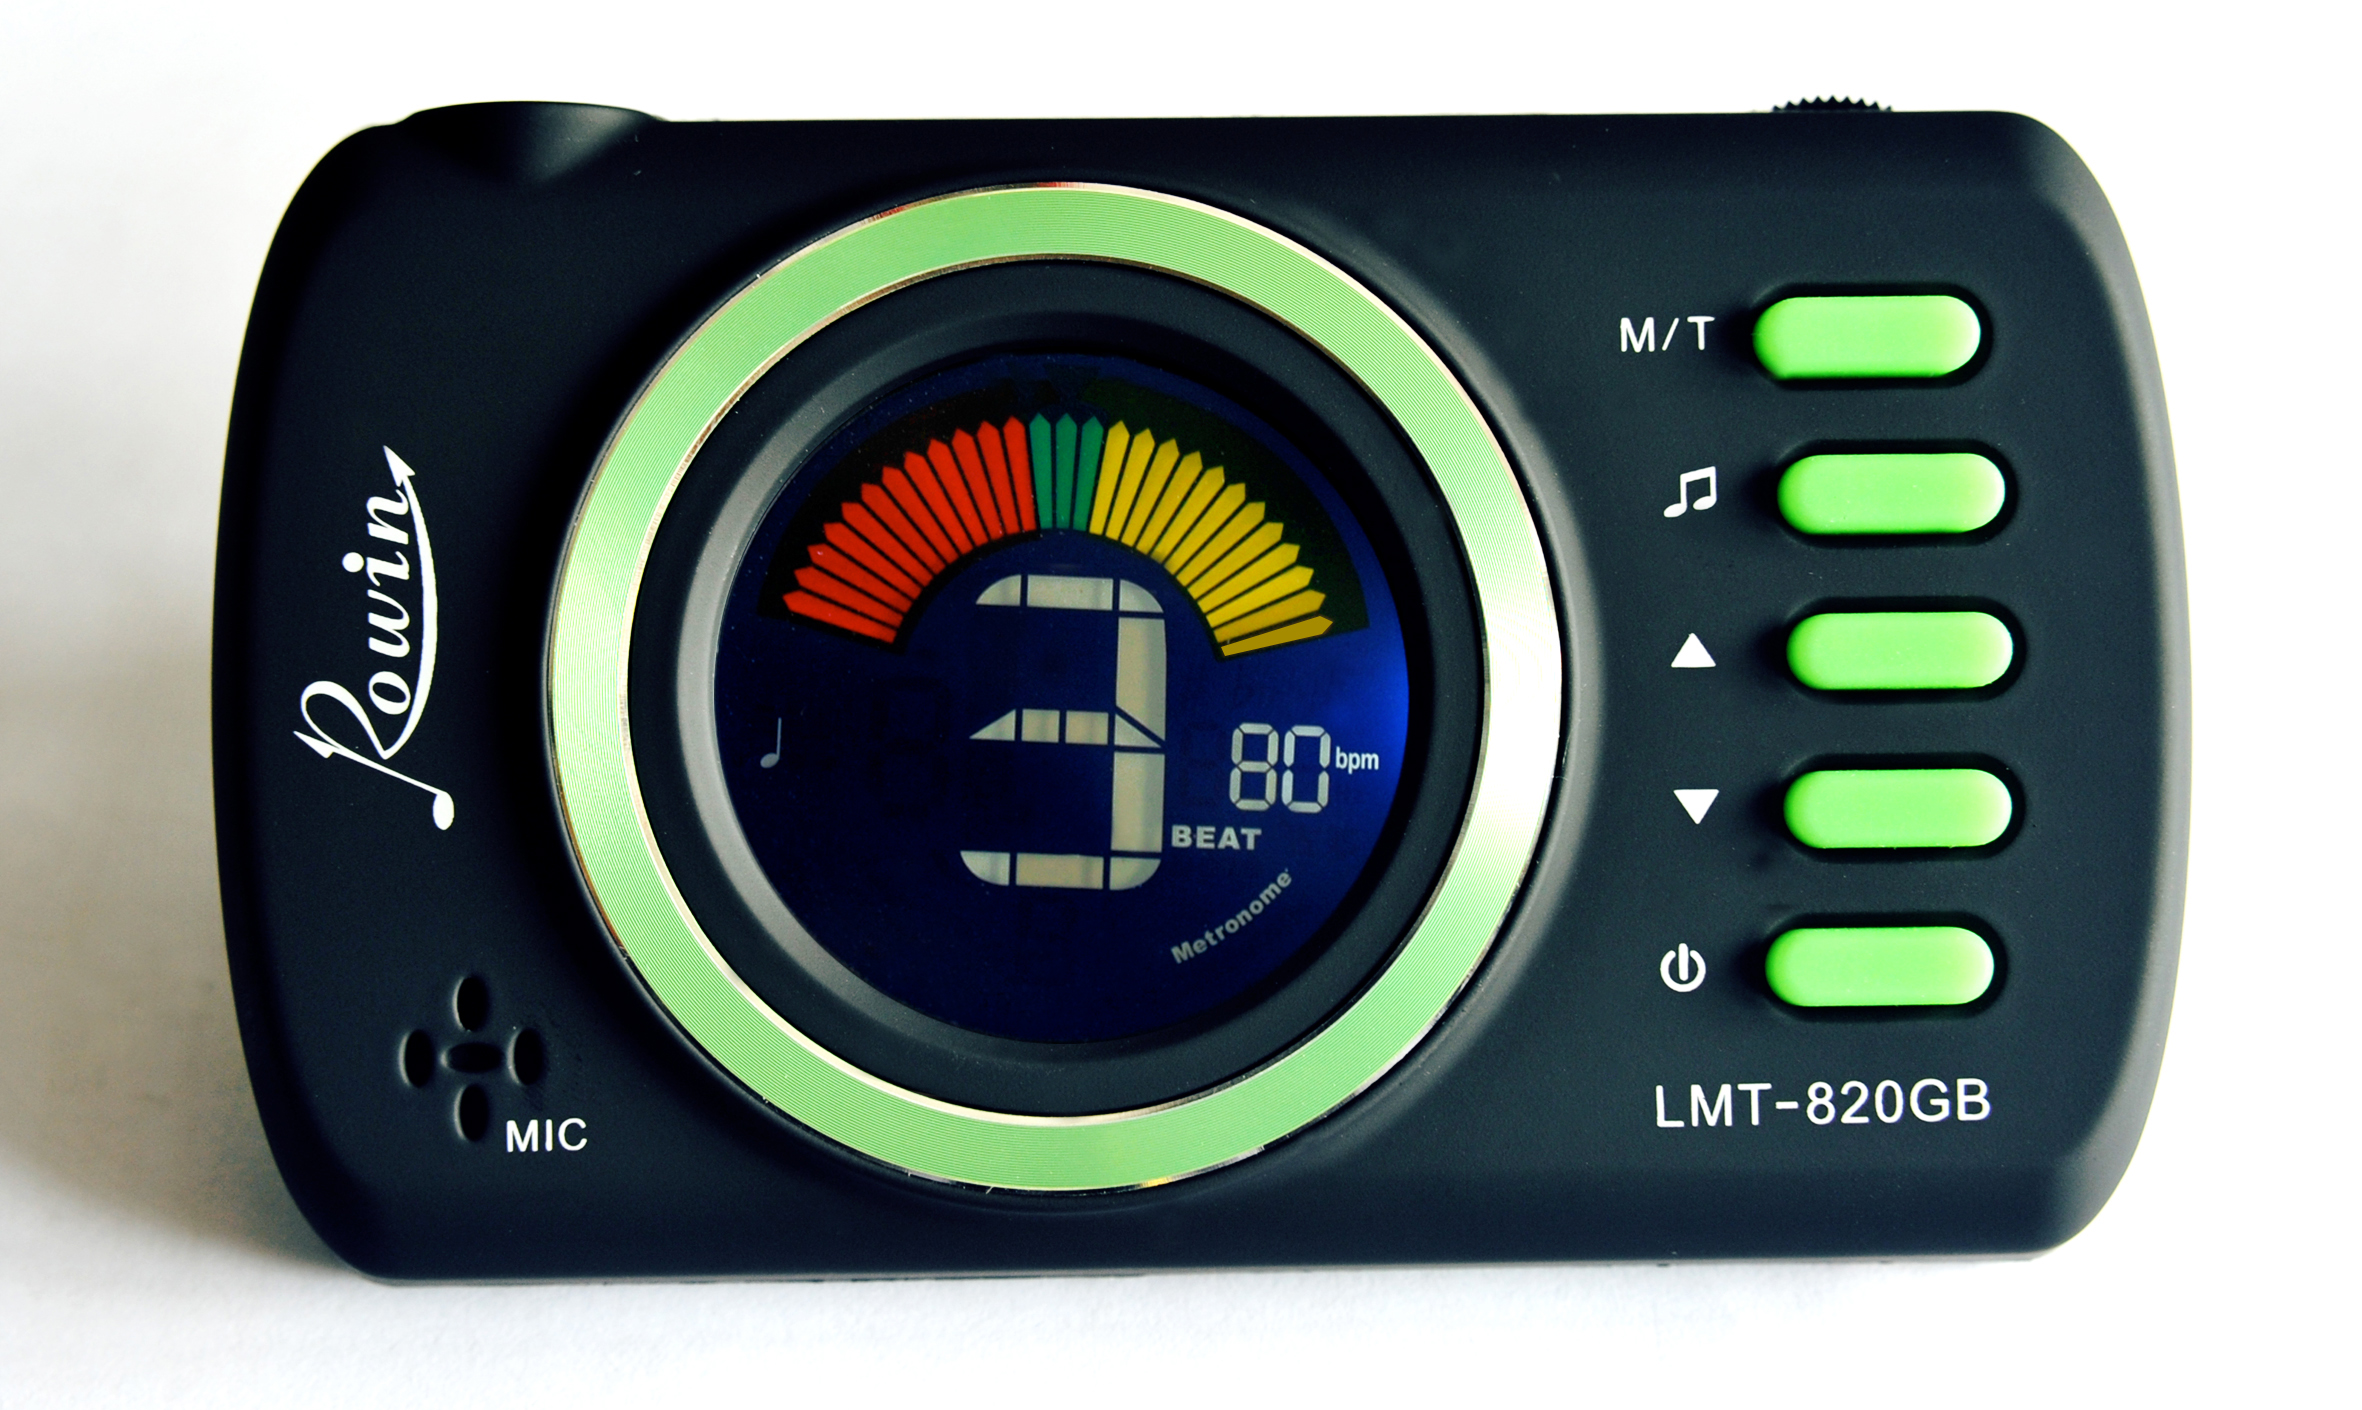 LMT-820GB